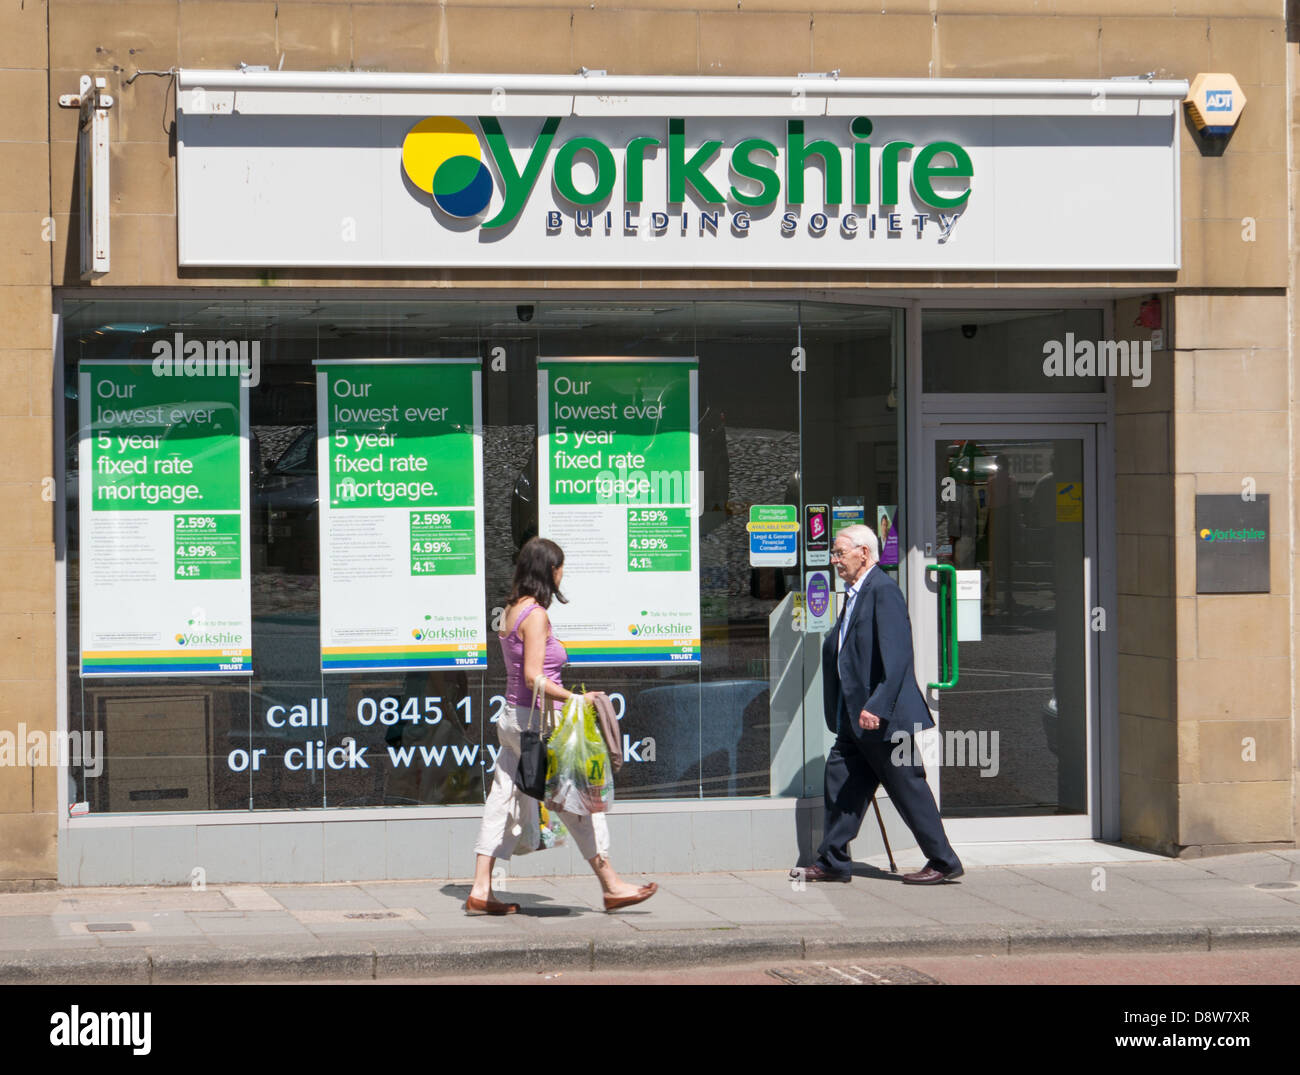 Menschen zu Fuß vorbei an der Yorkshire Building Society, Alnwick, Northumberland, England, UK Stockfoto